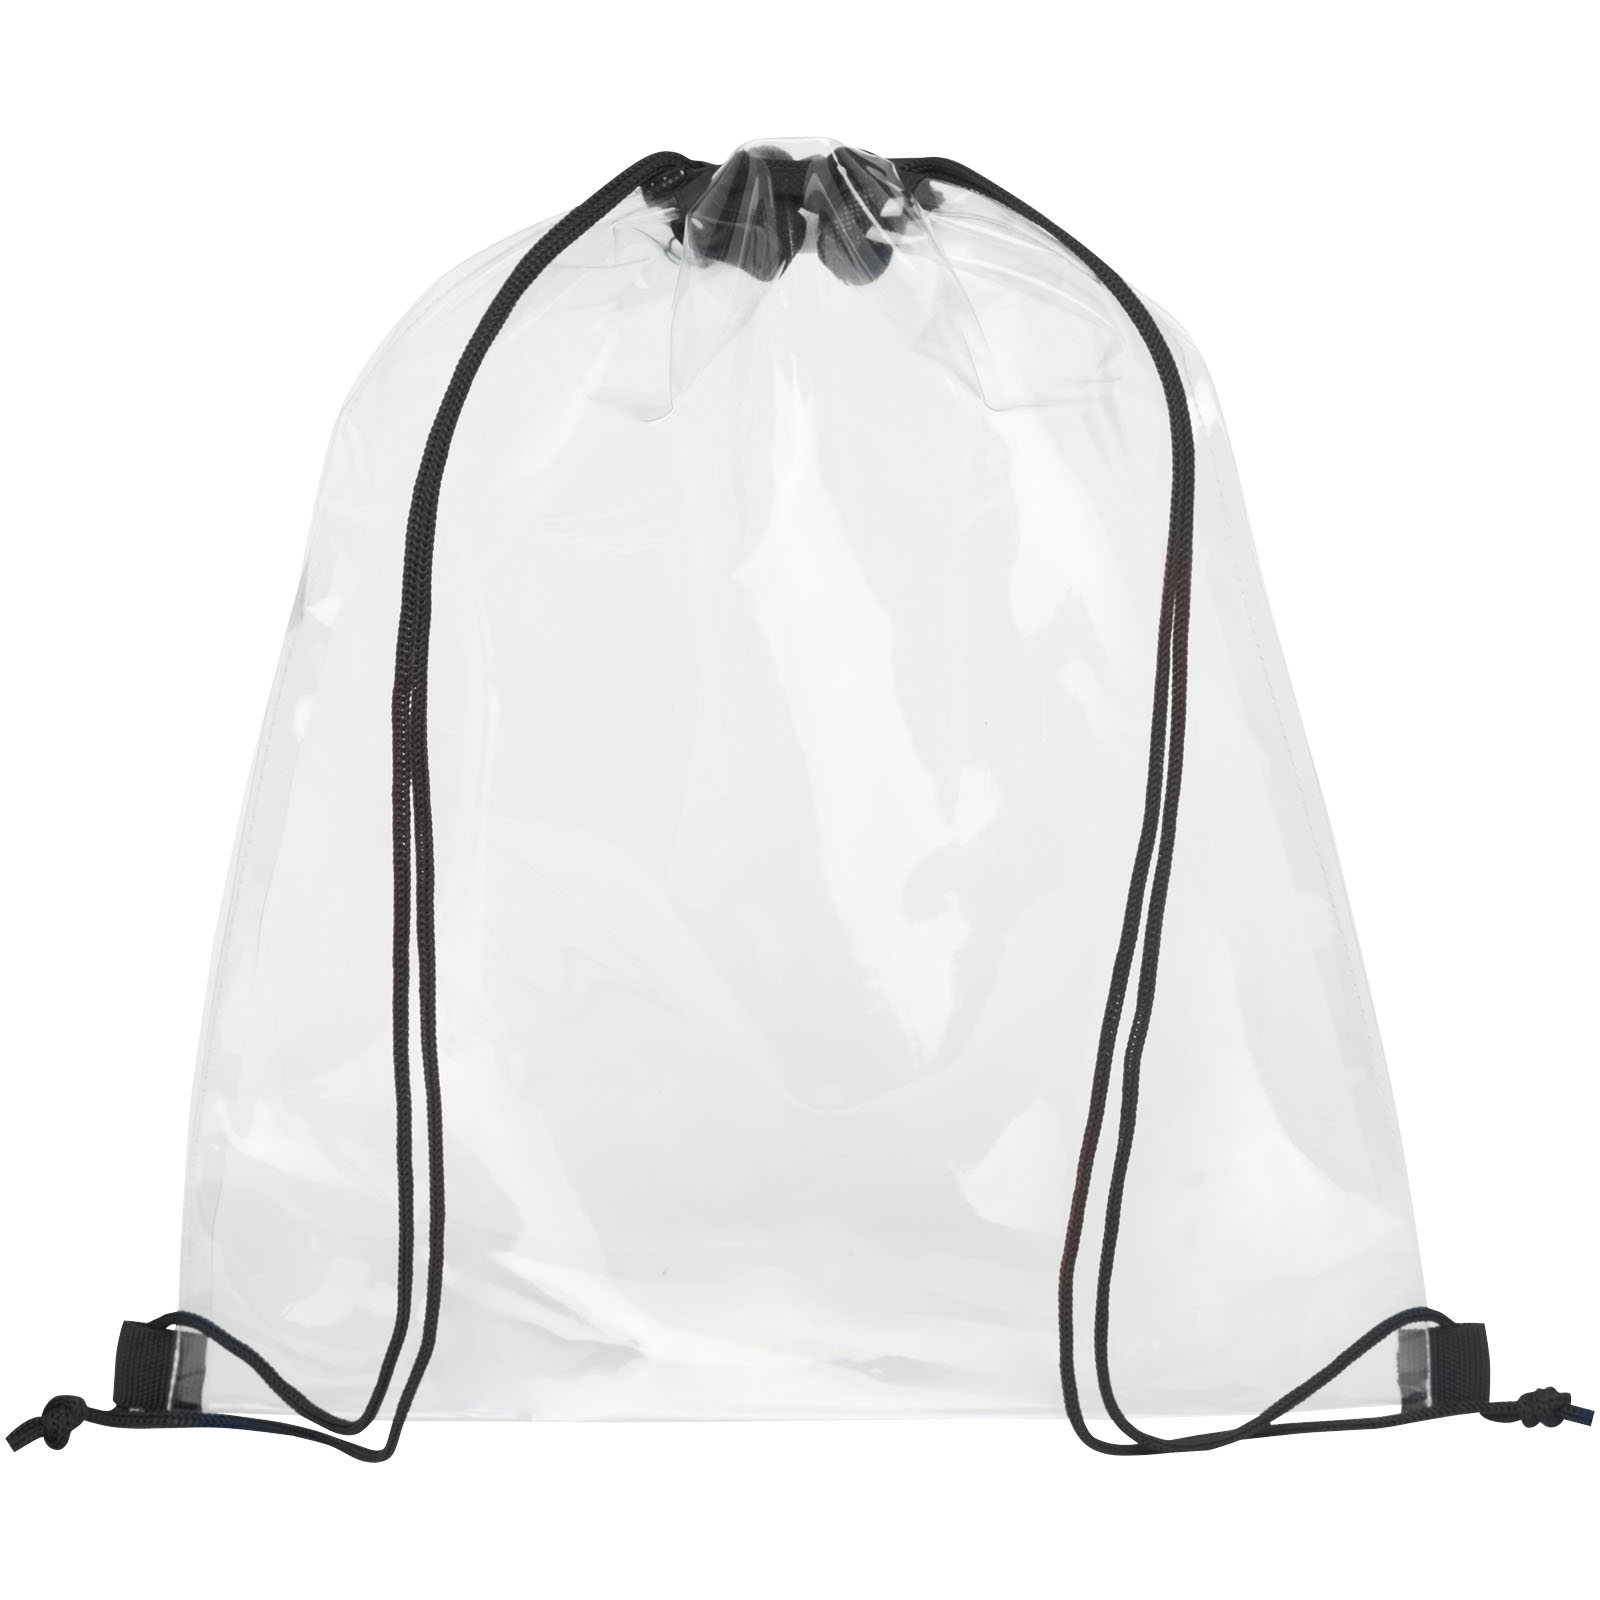 Advertising Drawstring Bags - Lancaster transparent drawstring bag 5L - 1